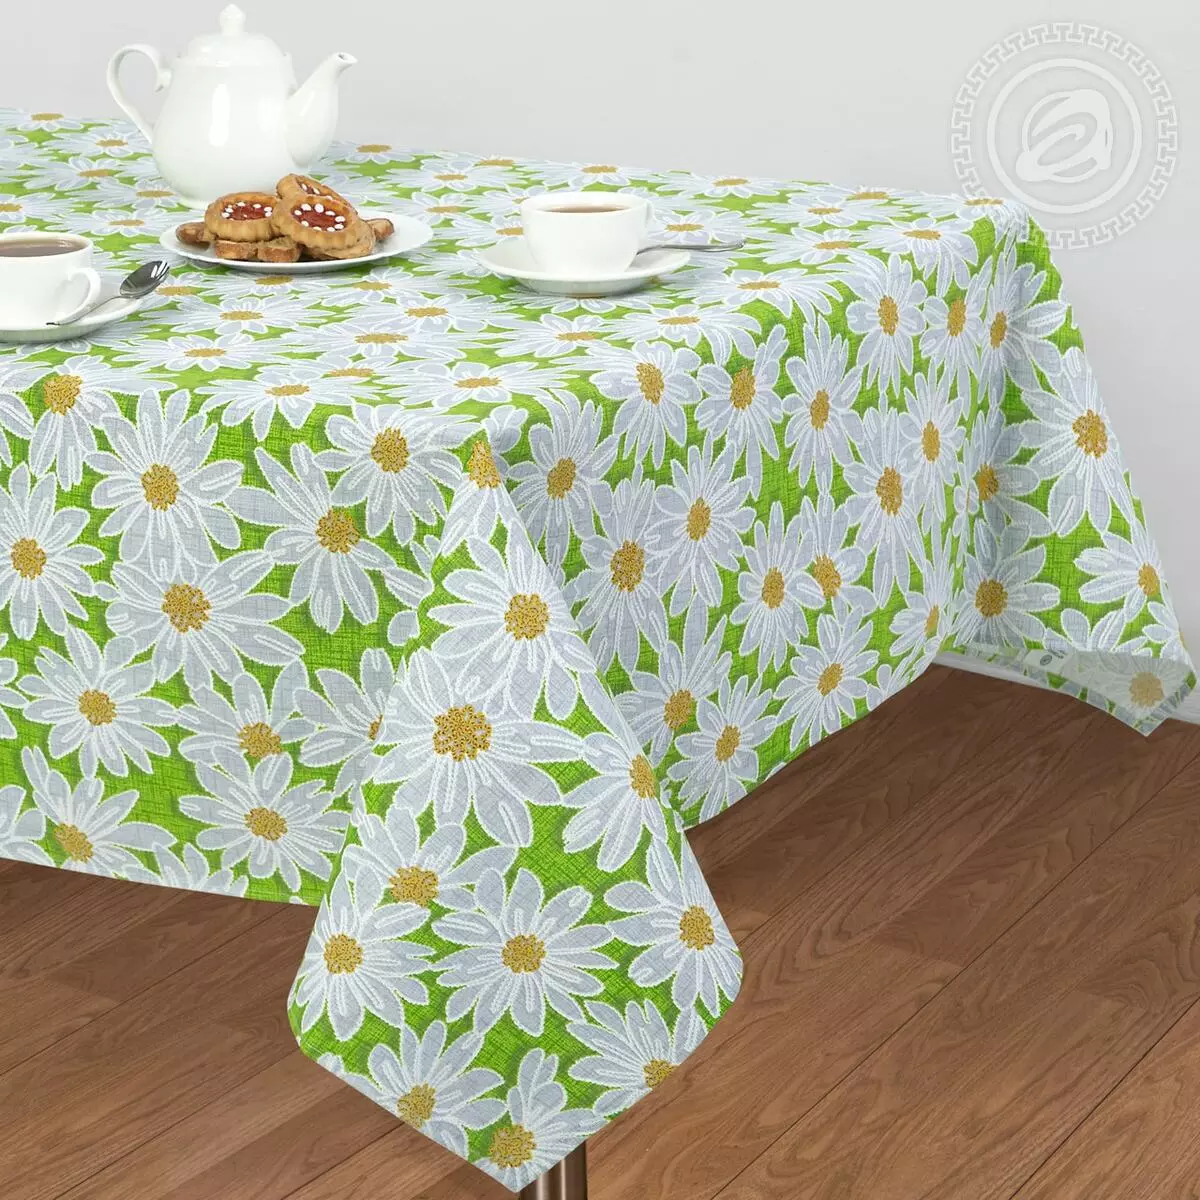 녹색 식탁보 : 테이블 및 회색 녹색, 설정 옵션에있는 어두운 녹색 모노 포닉 식탁보. 인테리어의 린넨 및 자카드, 타원형 및 둥근 식탁보 21601_23